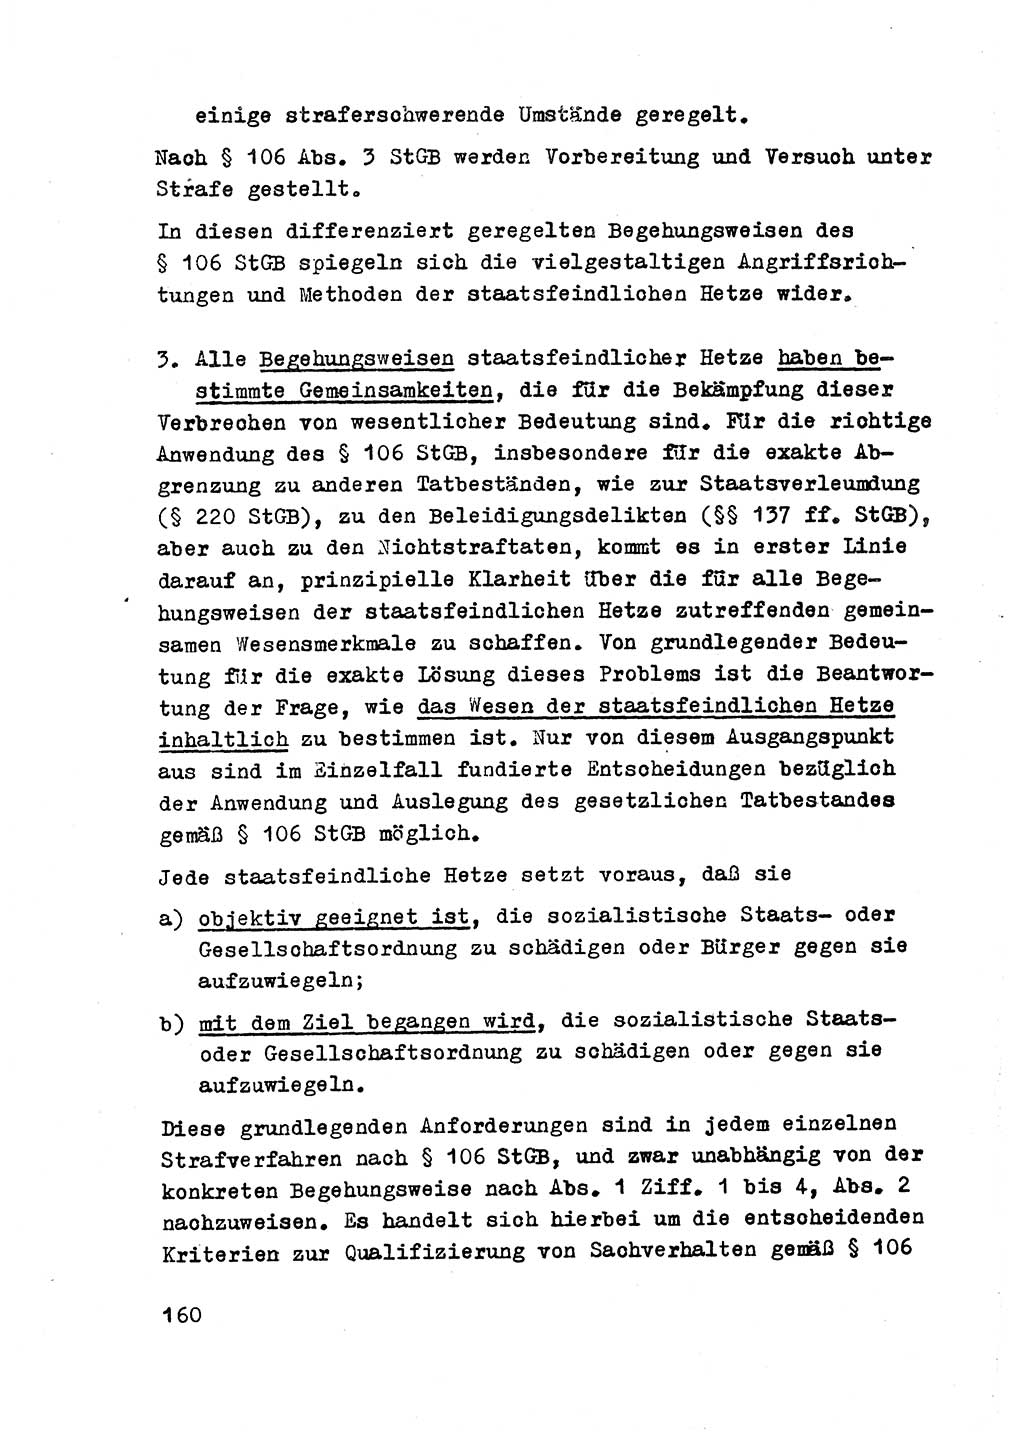 Strafrecht der DDR (Deutsche Demokratische Republik), Besonderer Teil, Lehrmaterial, Heft 2 1969, Seite 160 (Strafr. DDR BT Lehrmat. H. 2 1969, S. 160)